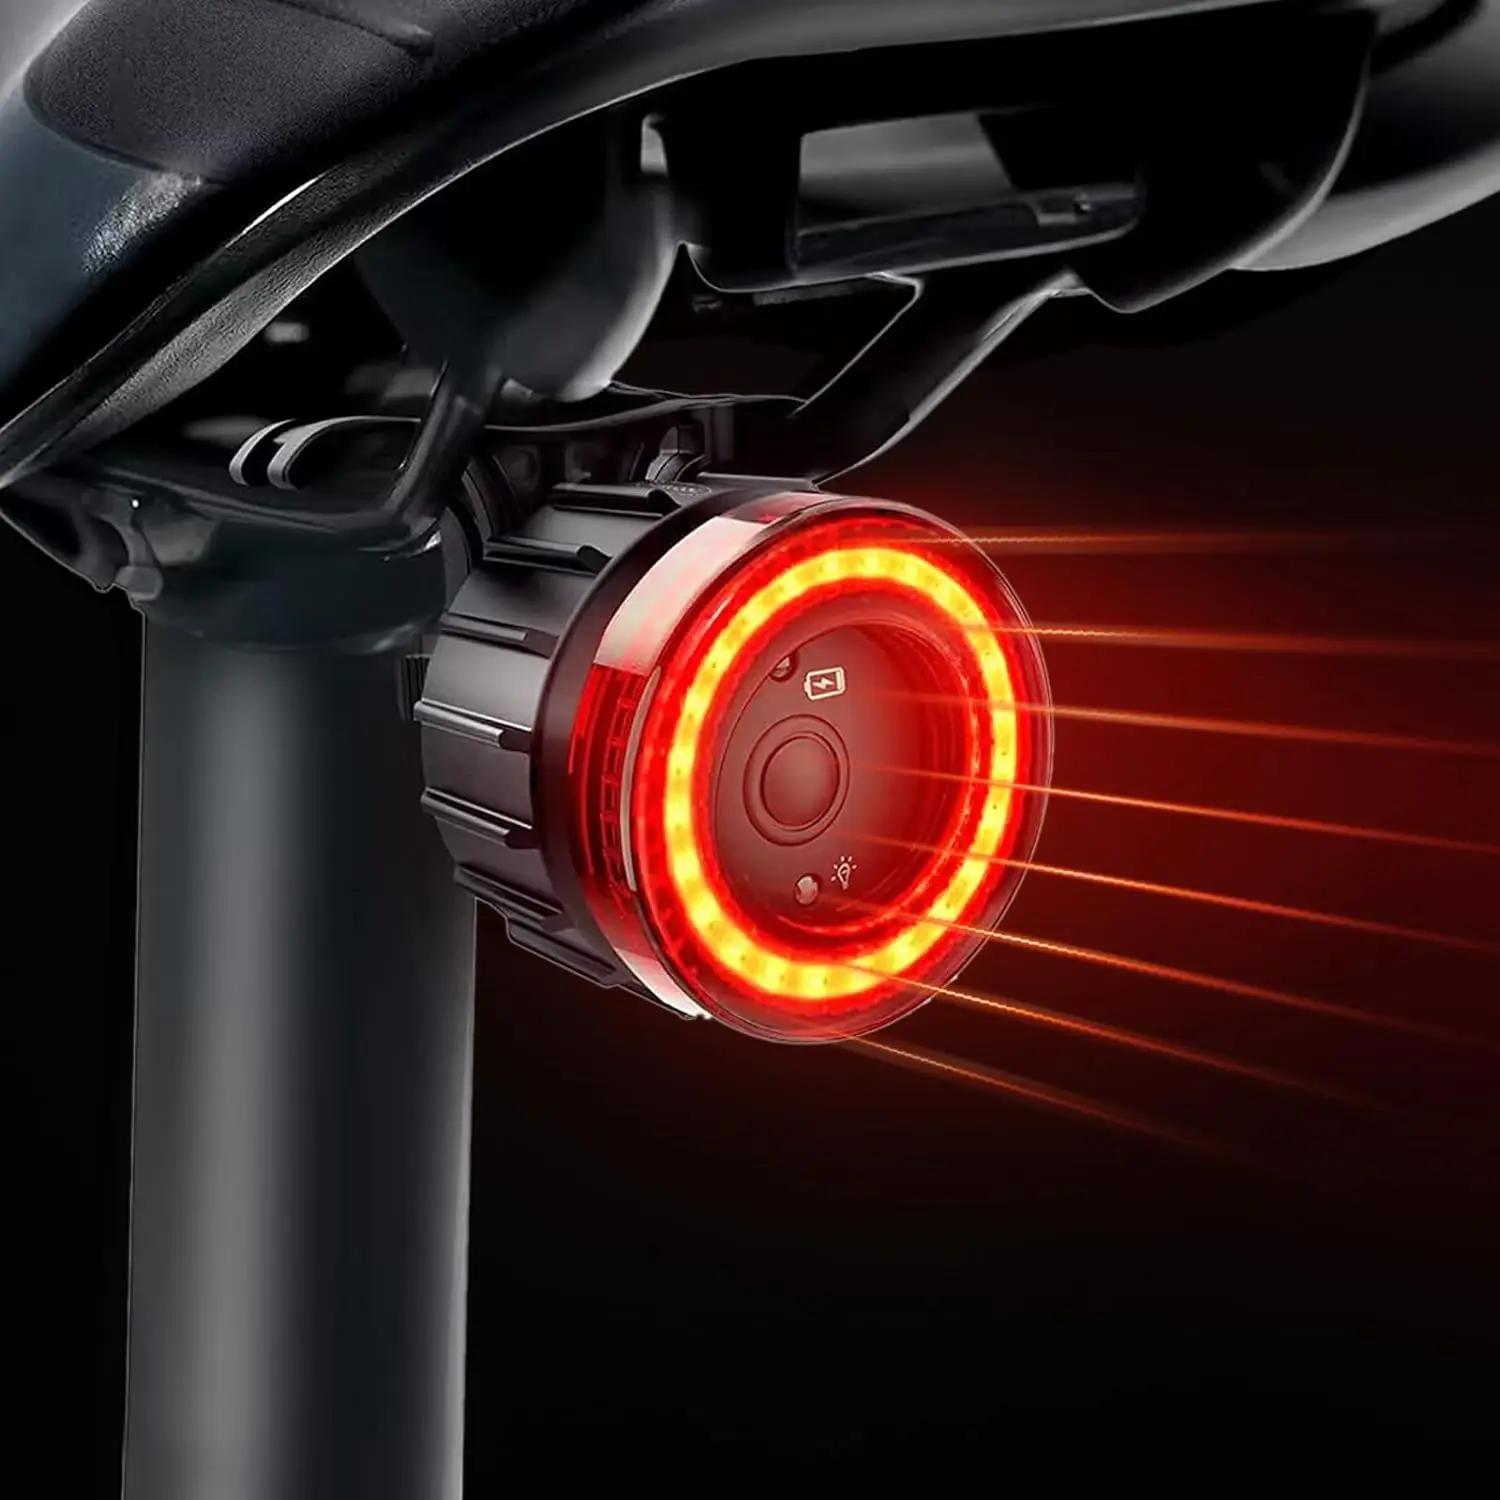 업그레이드된 자전거 스마트 자동 브레이크 감지 라이트, 방수 LED 충전 사이클링 미등, 자전거 후미등, 경고 자전거 미등